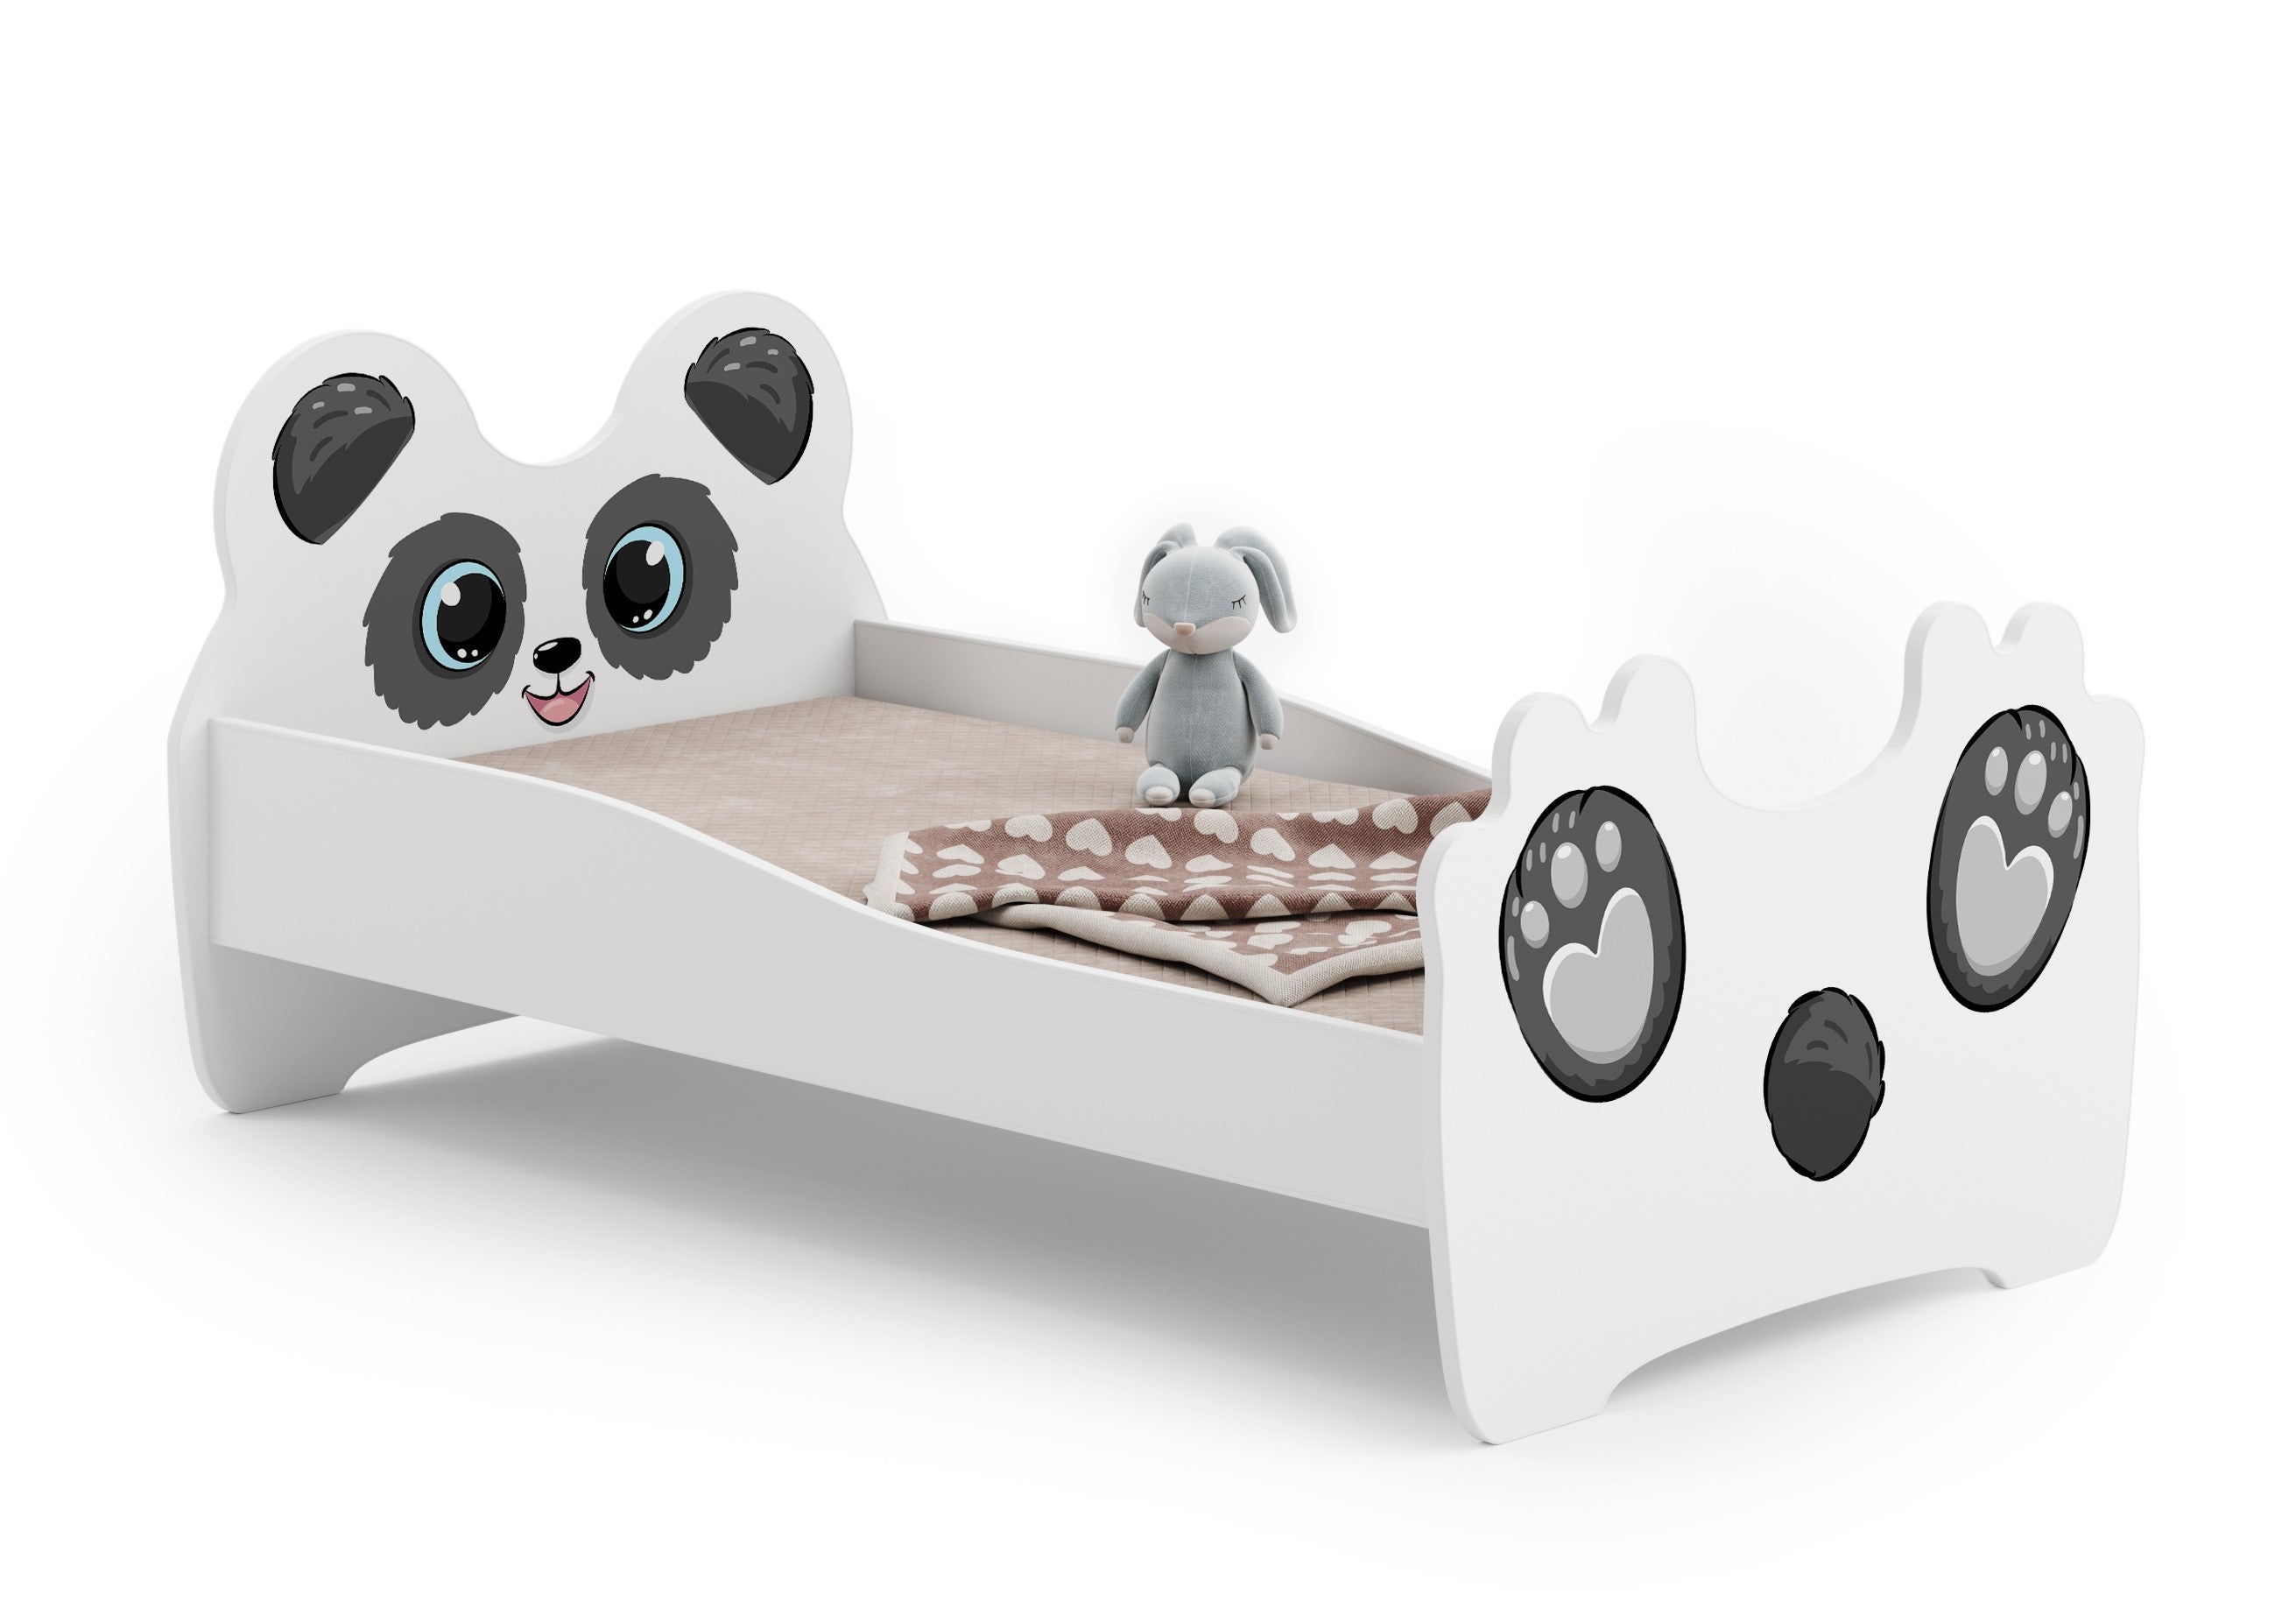 Luk - letto singolo 160x80 con grafica per bambini, in set con ringhiera,  materasso e rete